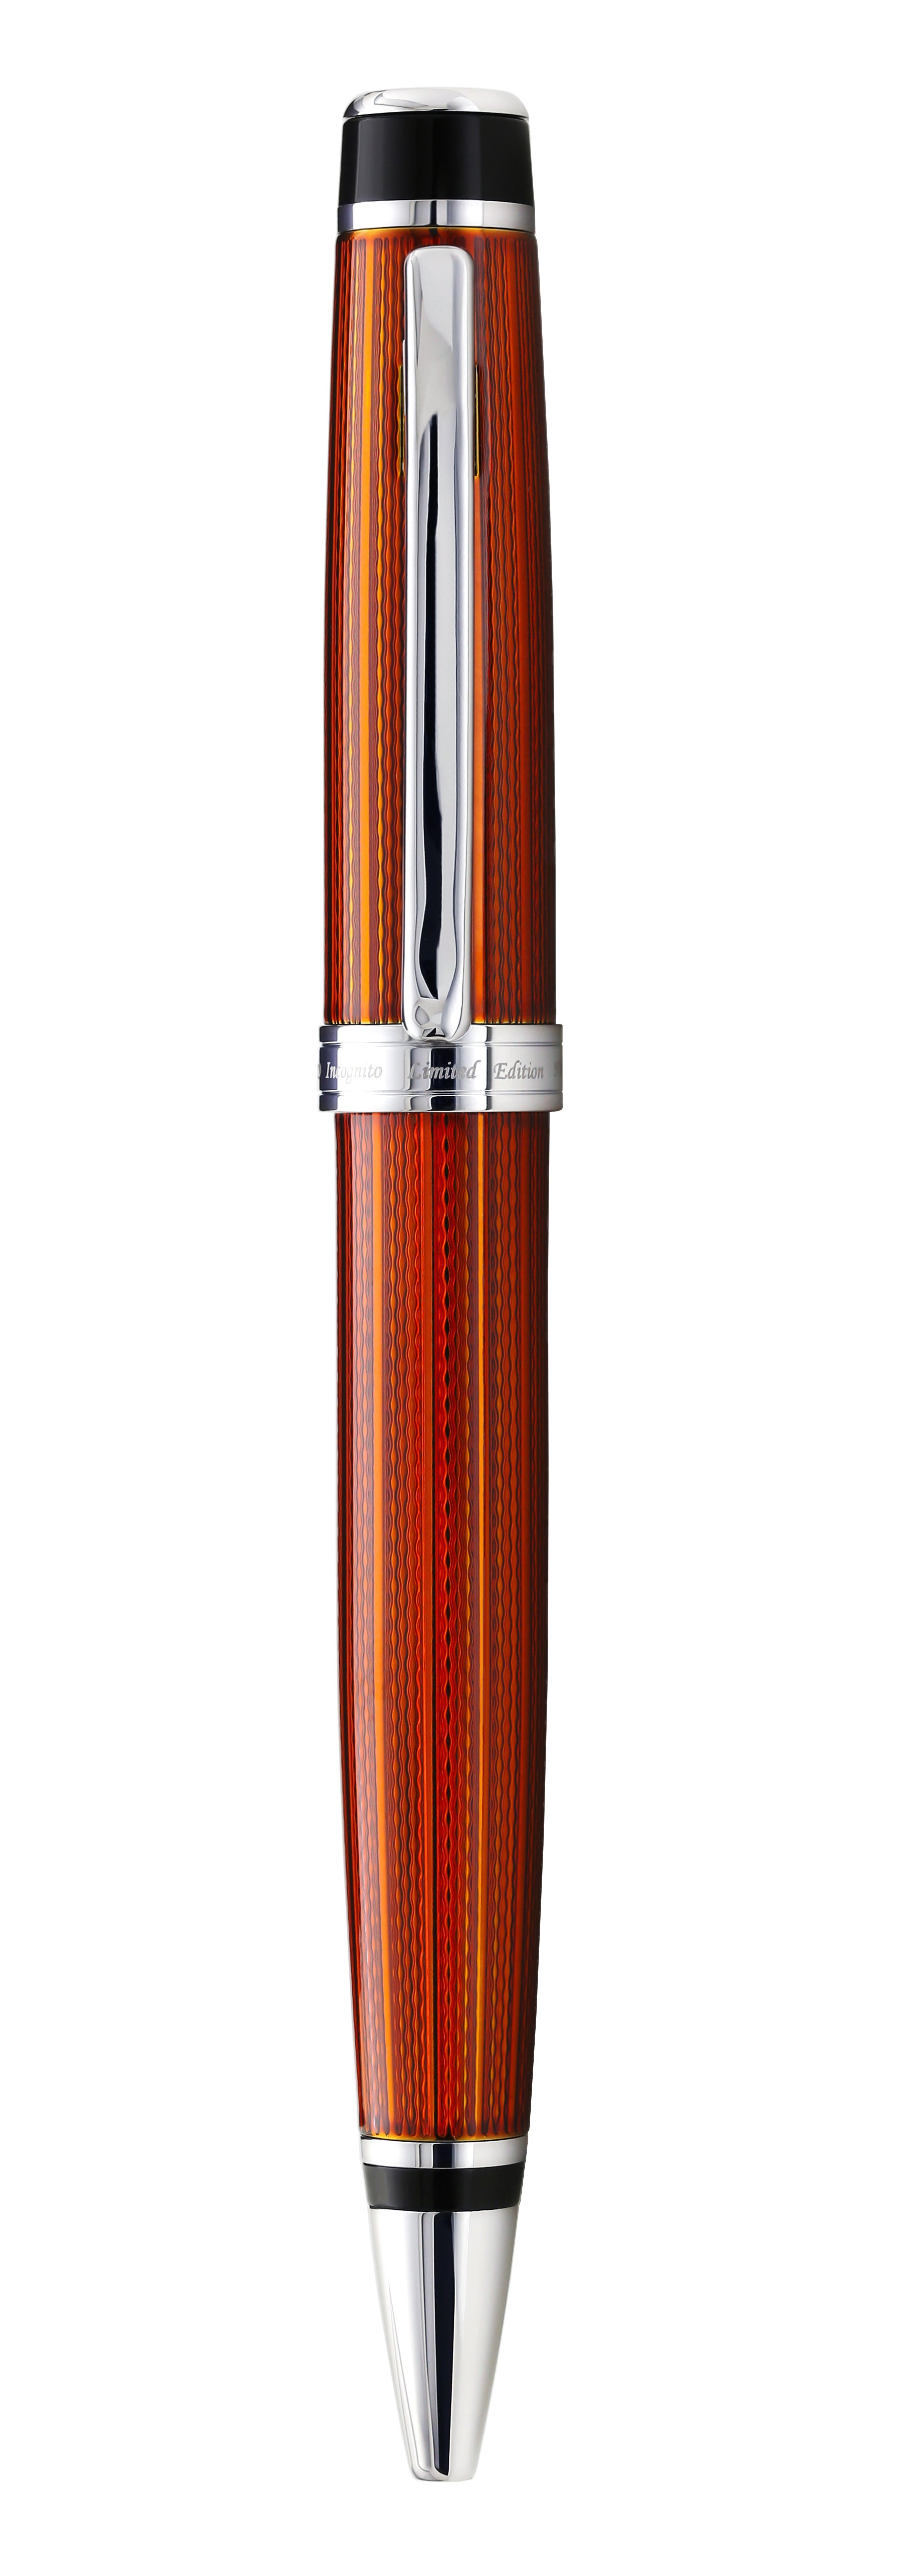 Xezo - Front view of the Incognito Sunstone B ballpoint pen